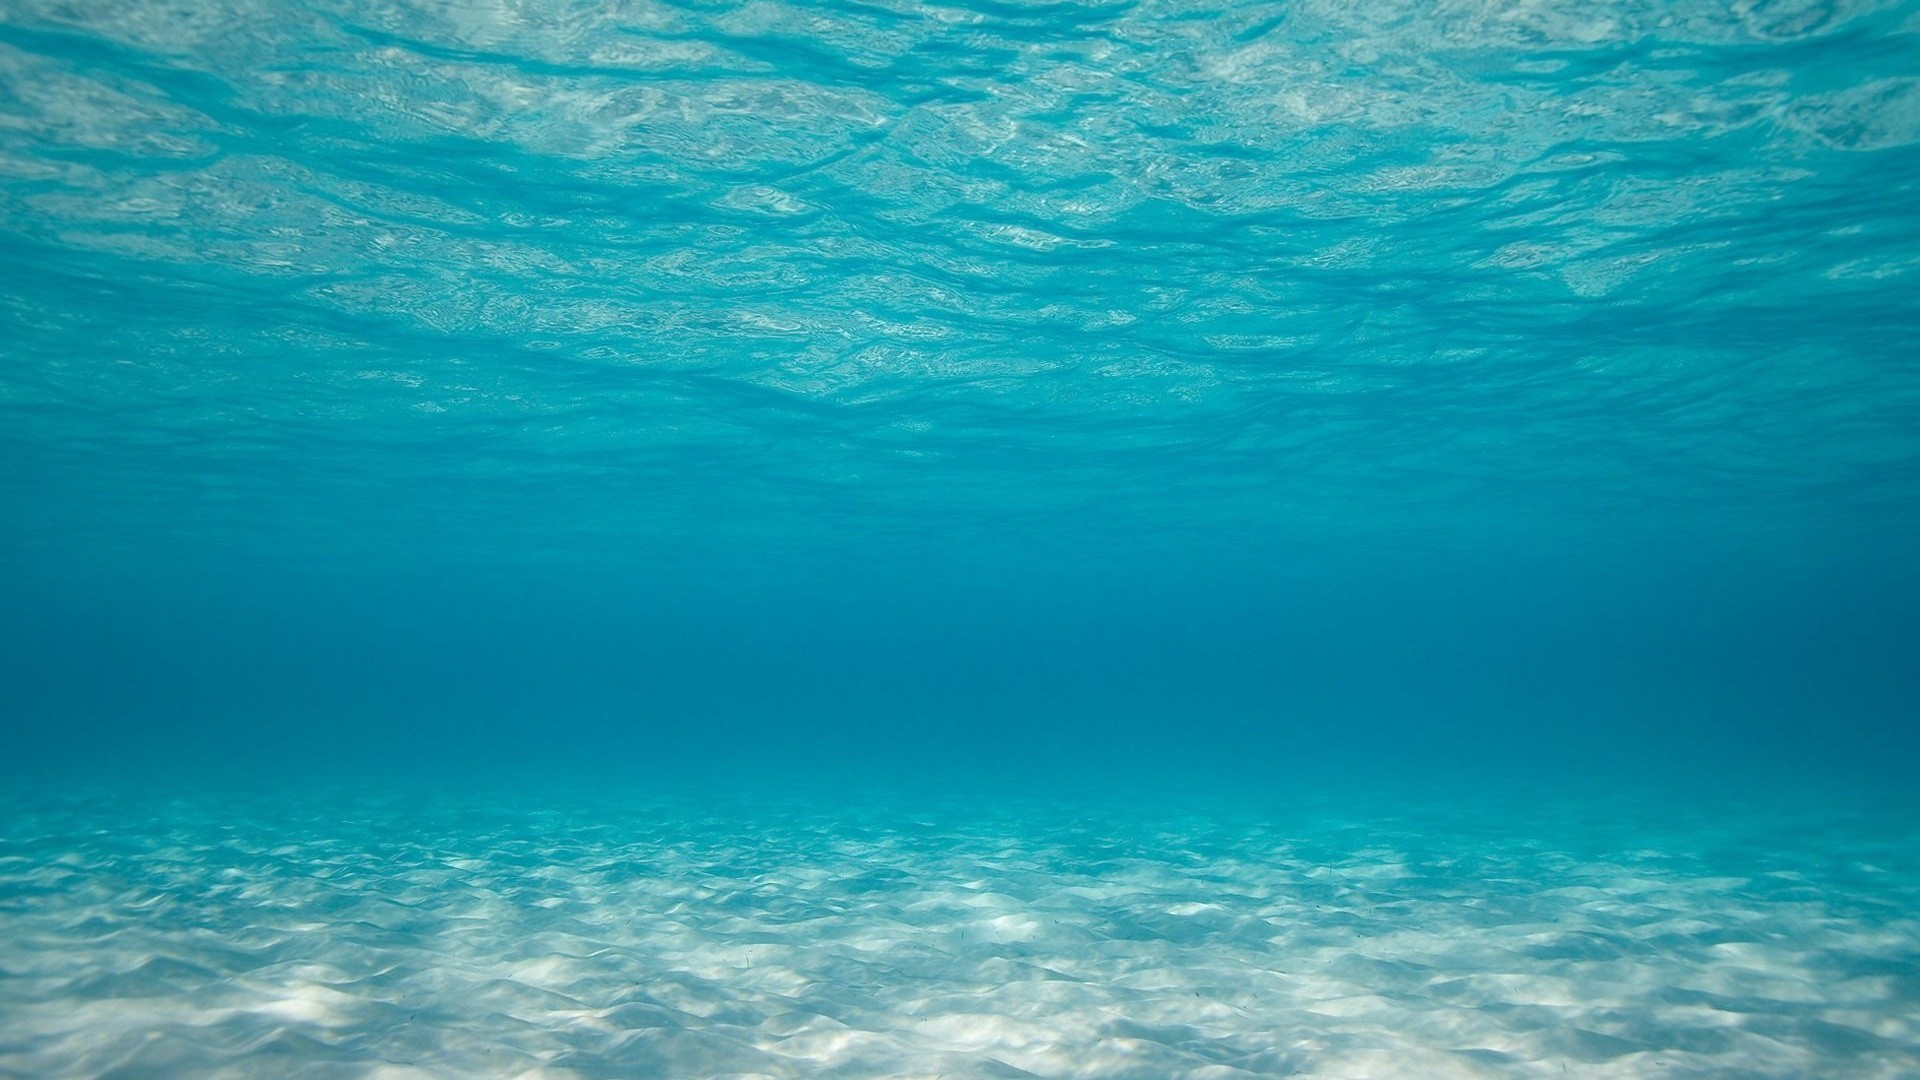 Ocean Scenes Wallpapers. 13 HD Ocean Scenes Desktop Wallpapers For Free  Download. ocean